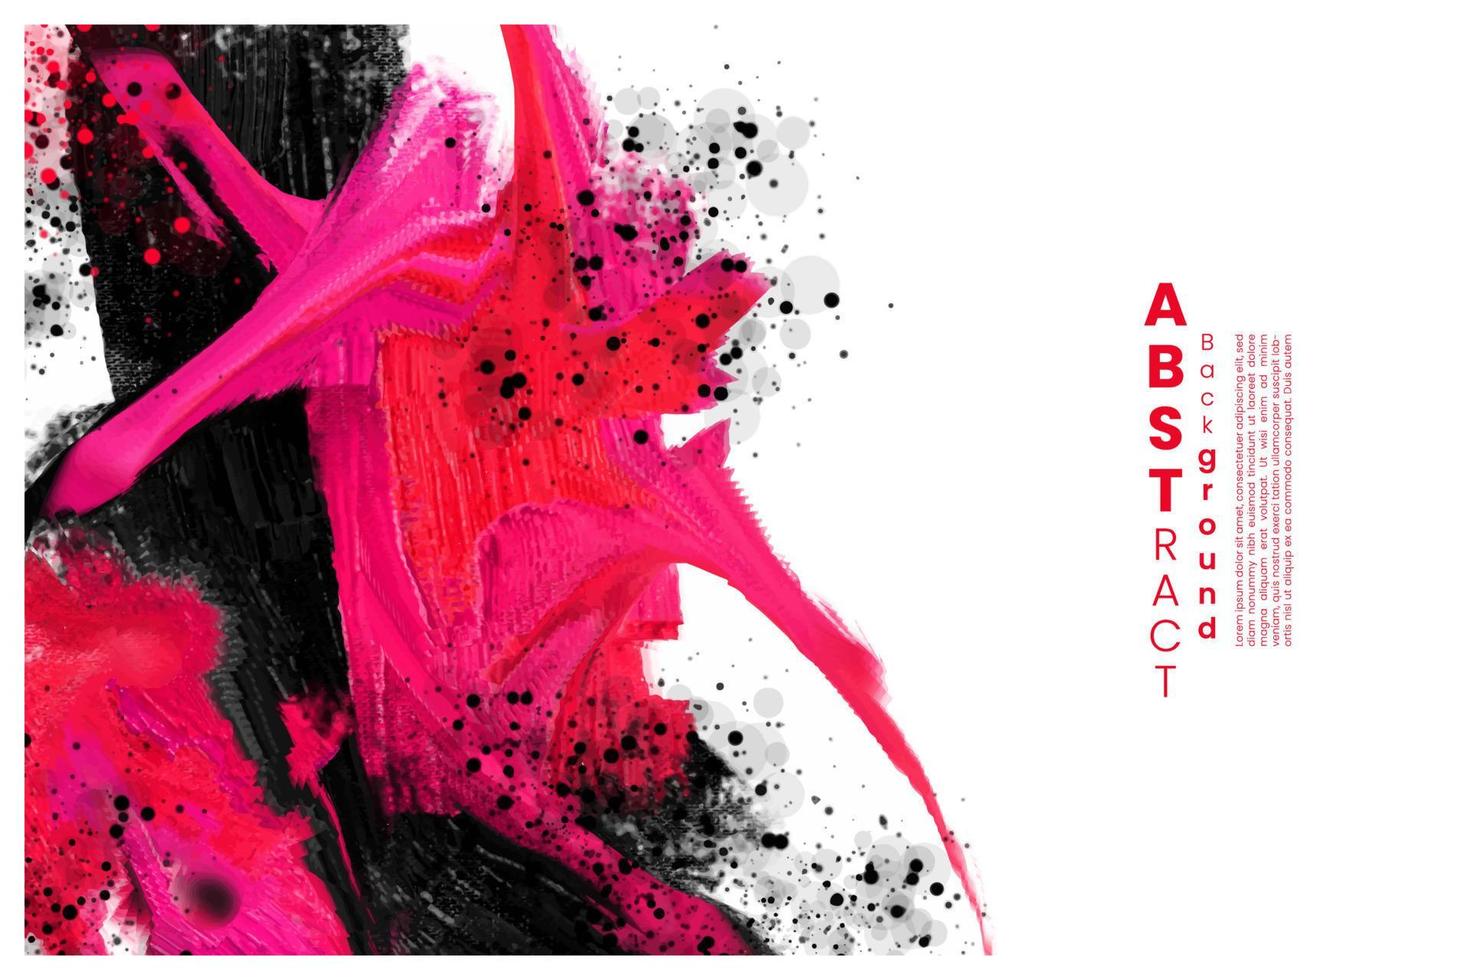 abstracte aquarel getextureerde achtergrond. ontwerp voor uw datum, ansichtkaart, banner, logo. vector